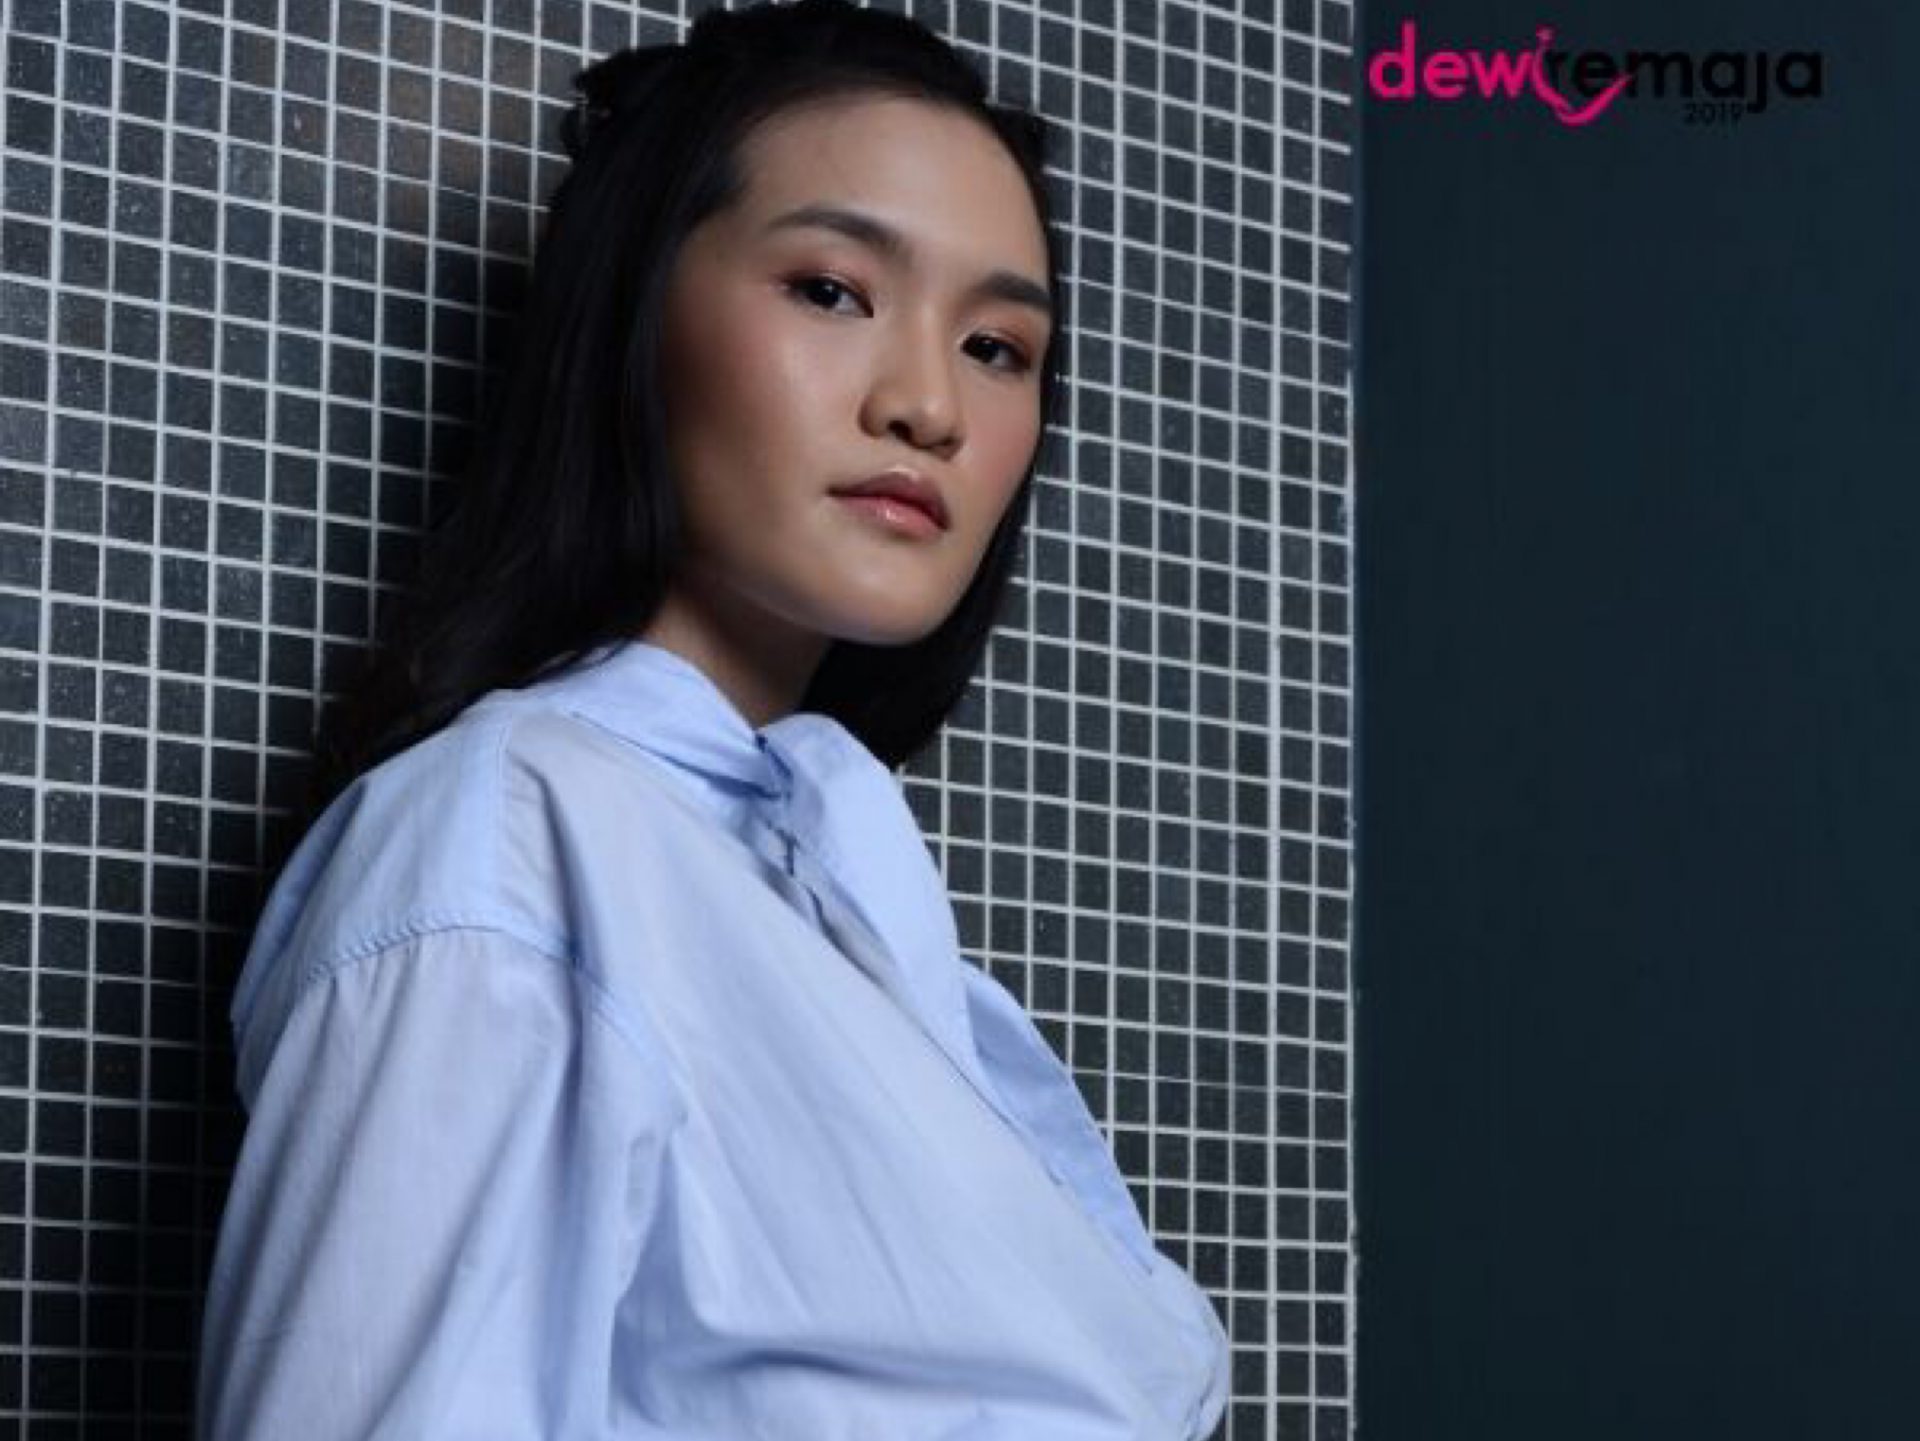 “Semua Boleh Berlakon, Tapi..” Nina Amin Tersingkir Episod 3 Dewi Remaja 2019